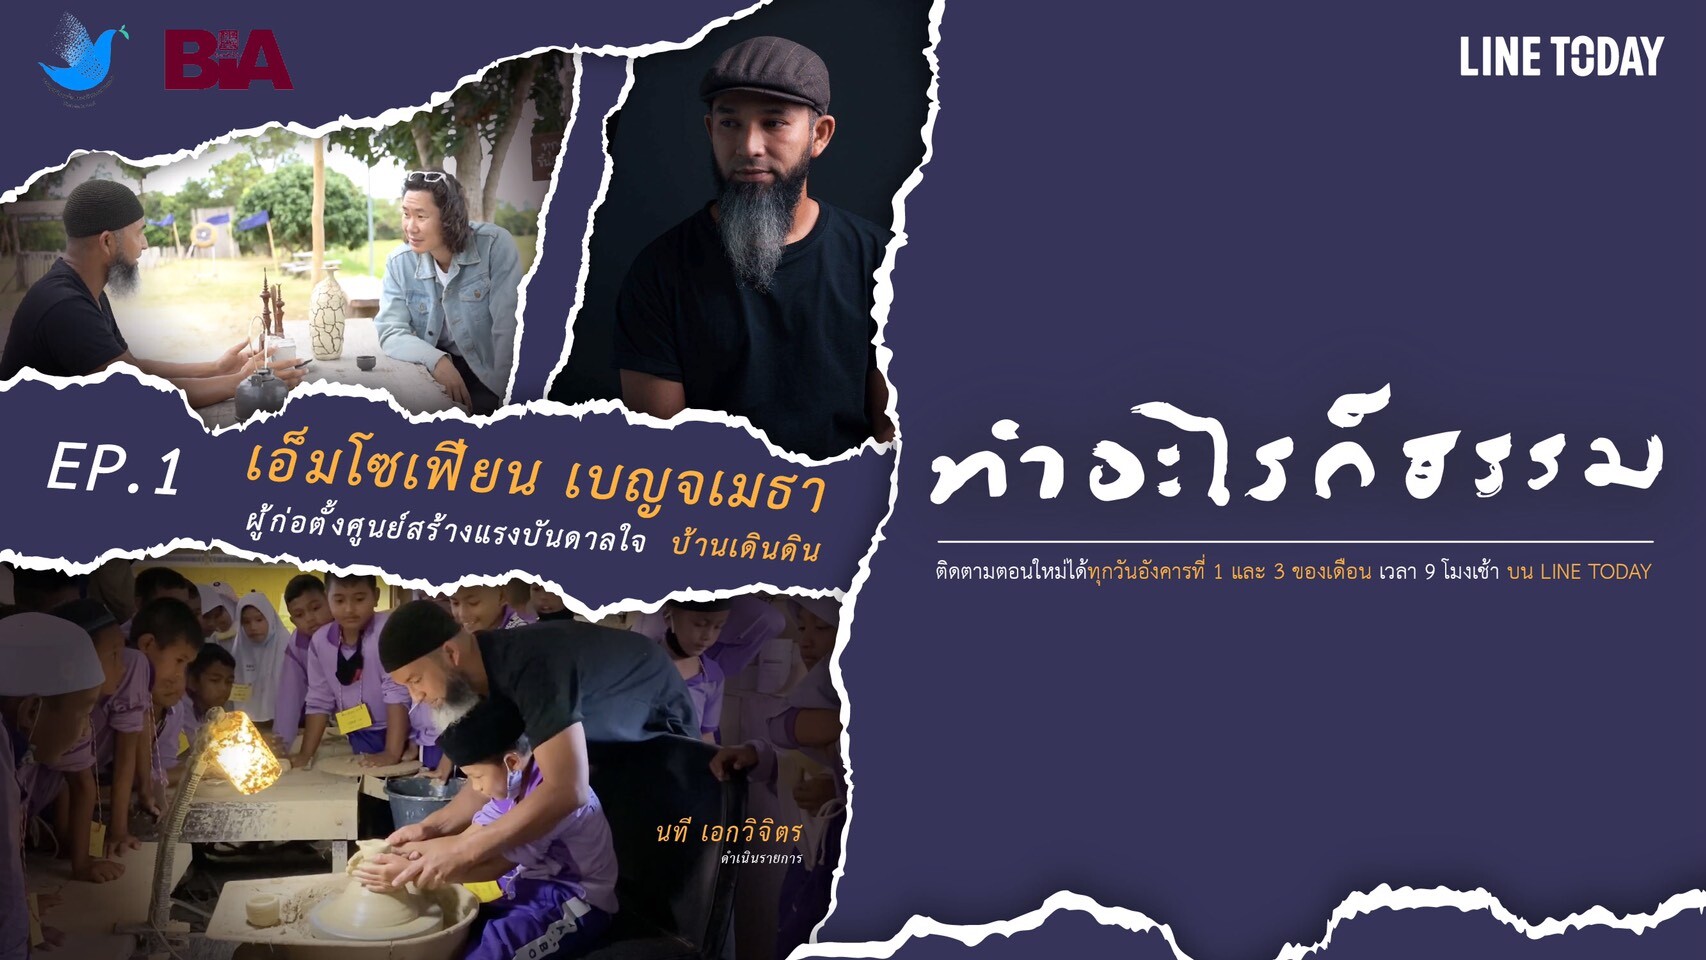 'สวนโมกข์กรุงเทพ' ร่วมกับ 'LINE ประเทศไทย' และ 'กองทุนพัฒนาสื่อปลอดภัยและสร้างสรรค์' เปิดชาแนลใหม่ 'ทำอะไรก็ธรรม' ใน LINE TV